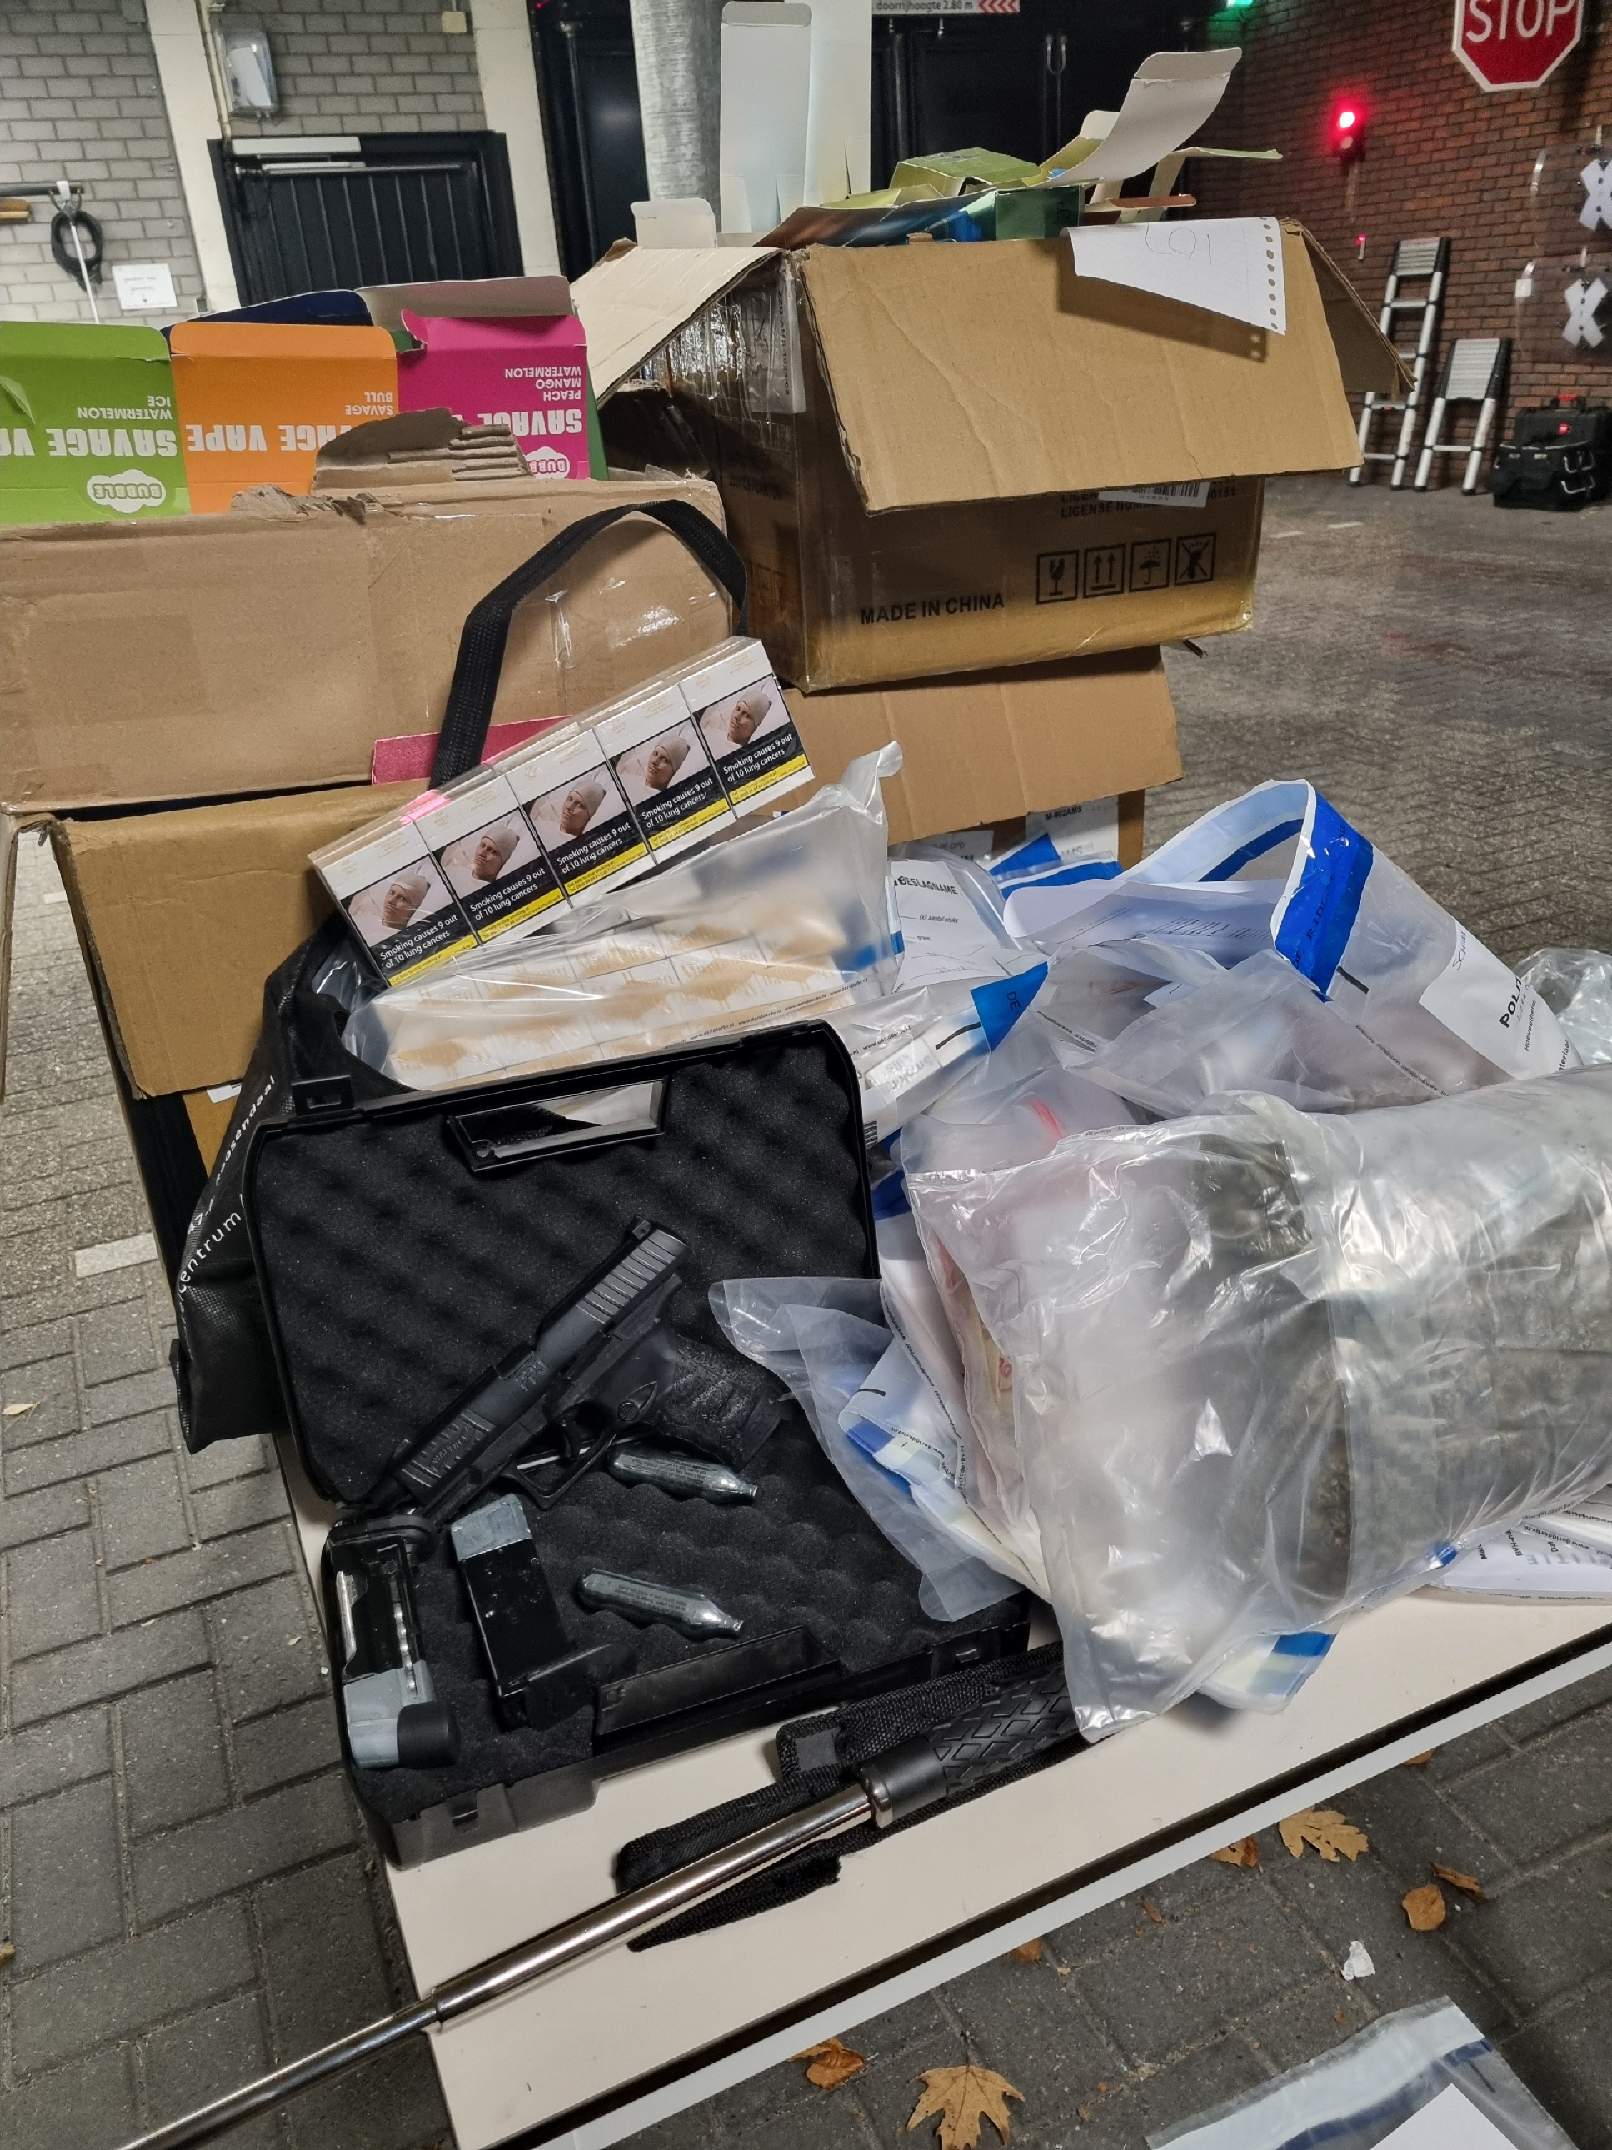 Vuurwerk, drugs, geld aangetroffen in woning Roosendaal - 1